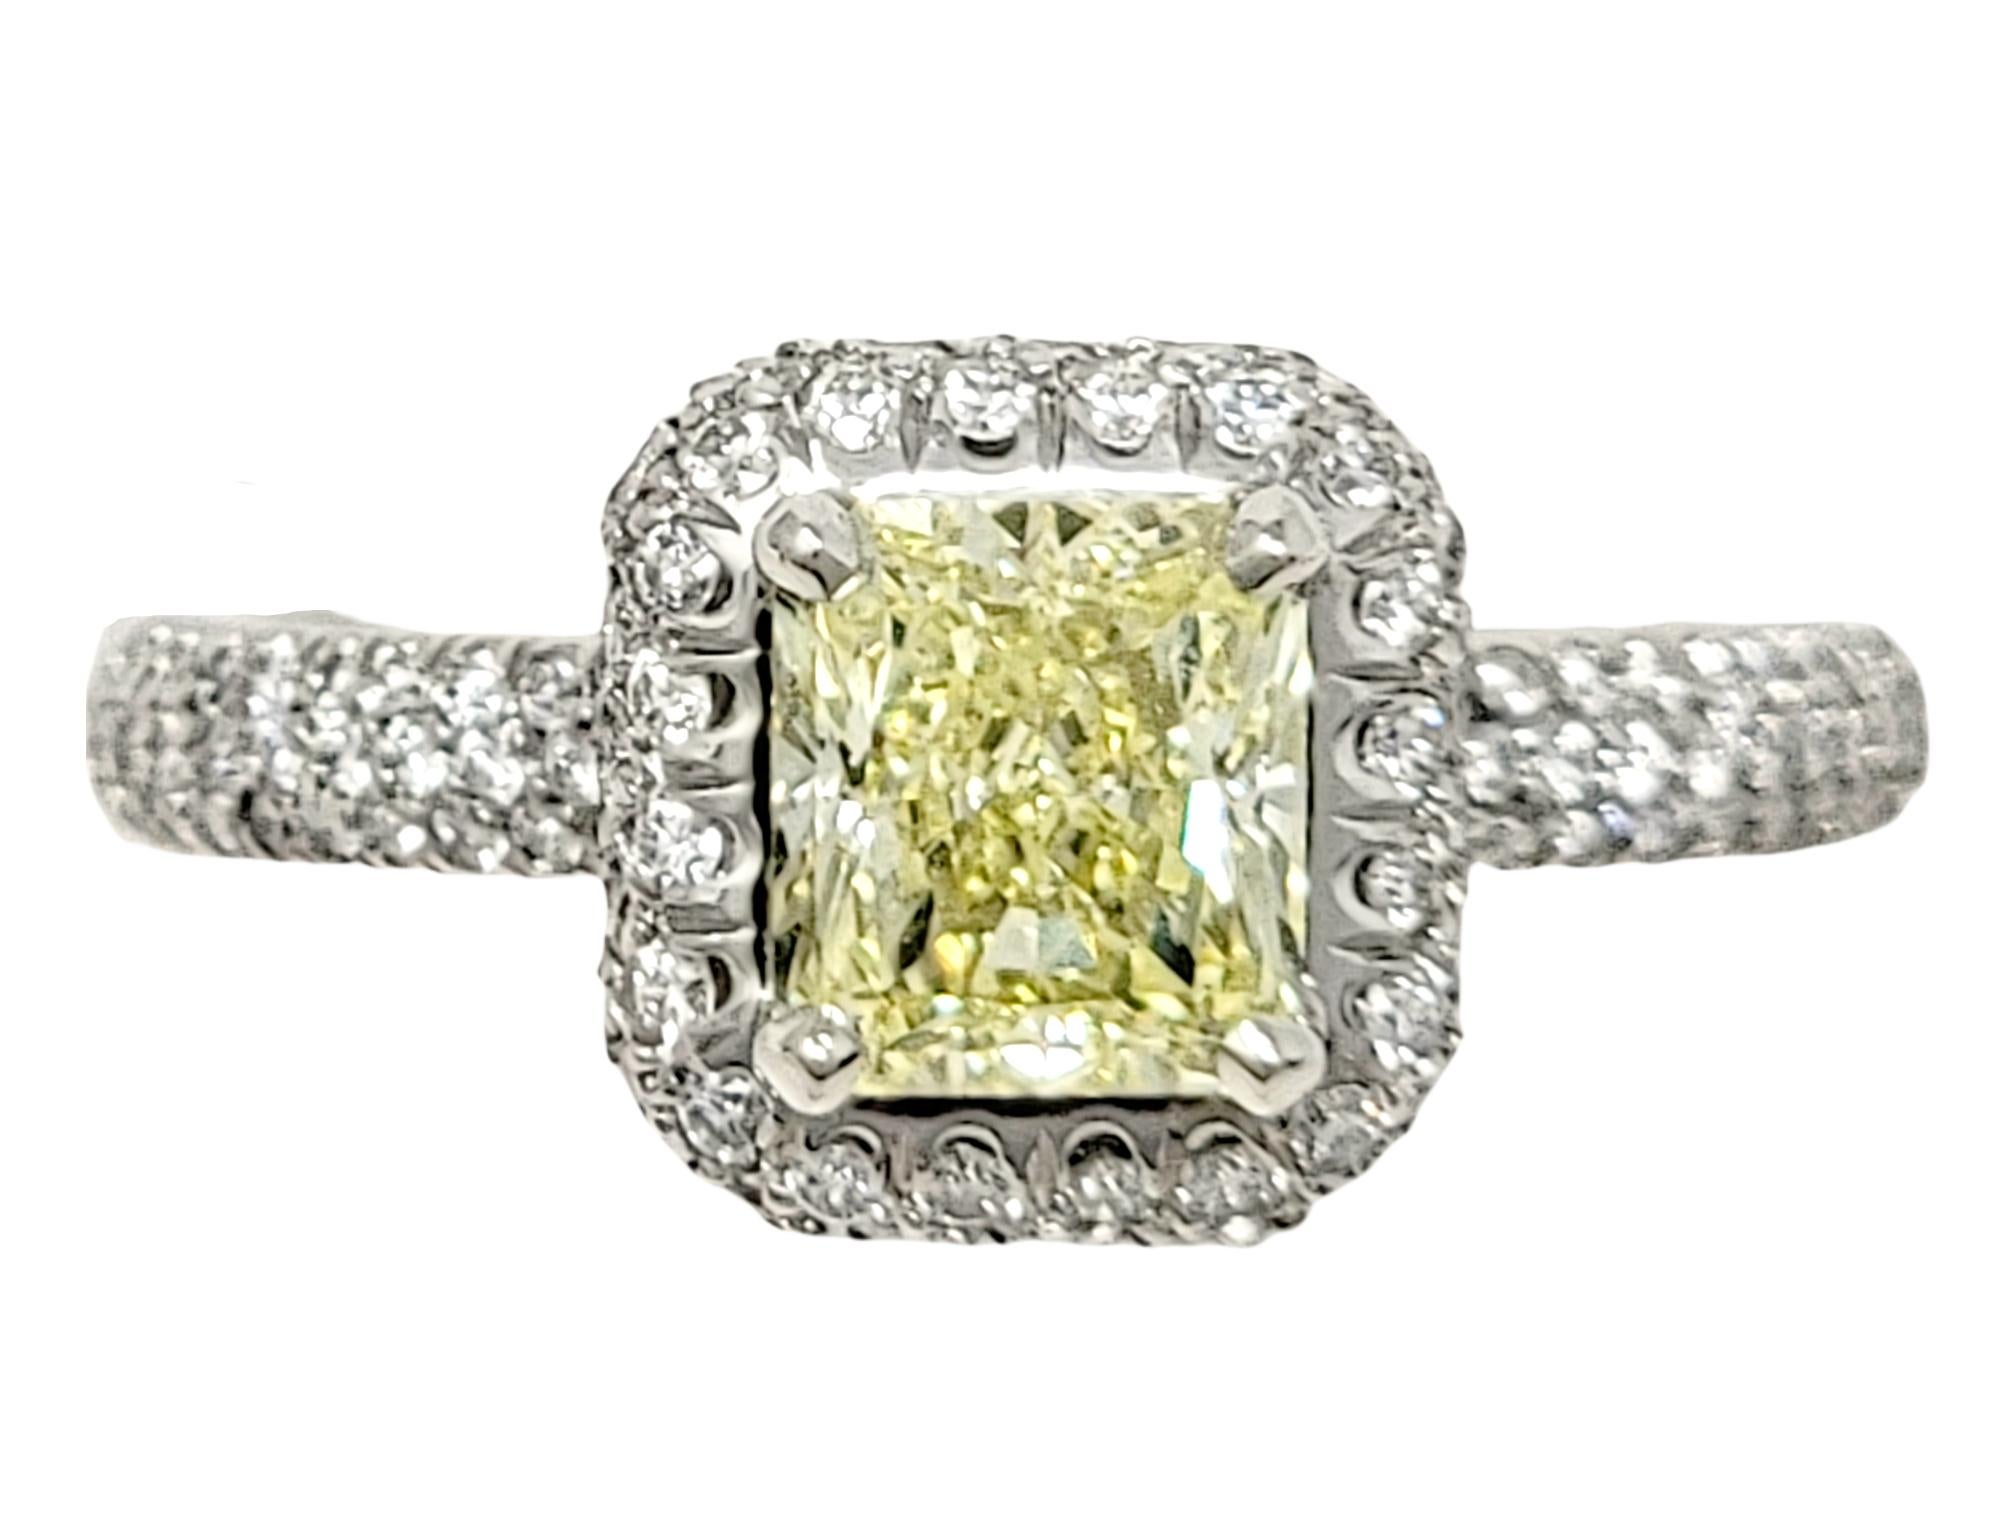 Ringgröße: 6

Dieser absolut exquisite Verlobungsring kombiniert weiße und gelbe Diamanten in einem modernisierten klassischen Design, das die Farbe und die Brillanz beider zur Geltung bringt. Der atemberaubende Ring verfügt über einen funkelnden